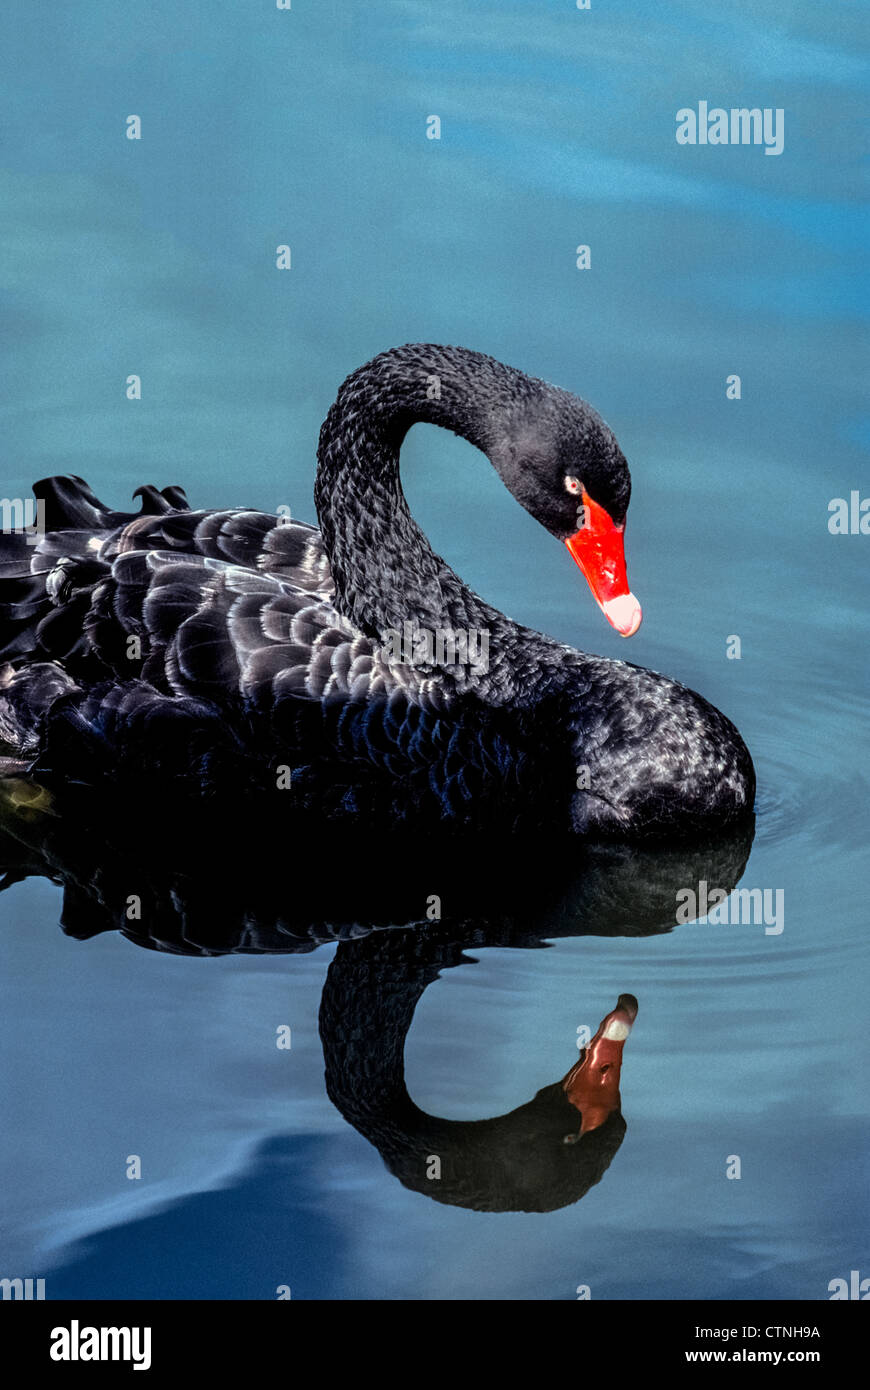 Ein ruhiger See macht eine Reflexion von einem schwimmenden Black Swan, eine exotische Wasservögel, geprägt von einem leuchtend roten Schnabel mit einem weißen Band nahe der Spitze. Stockfoto